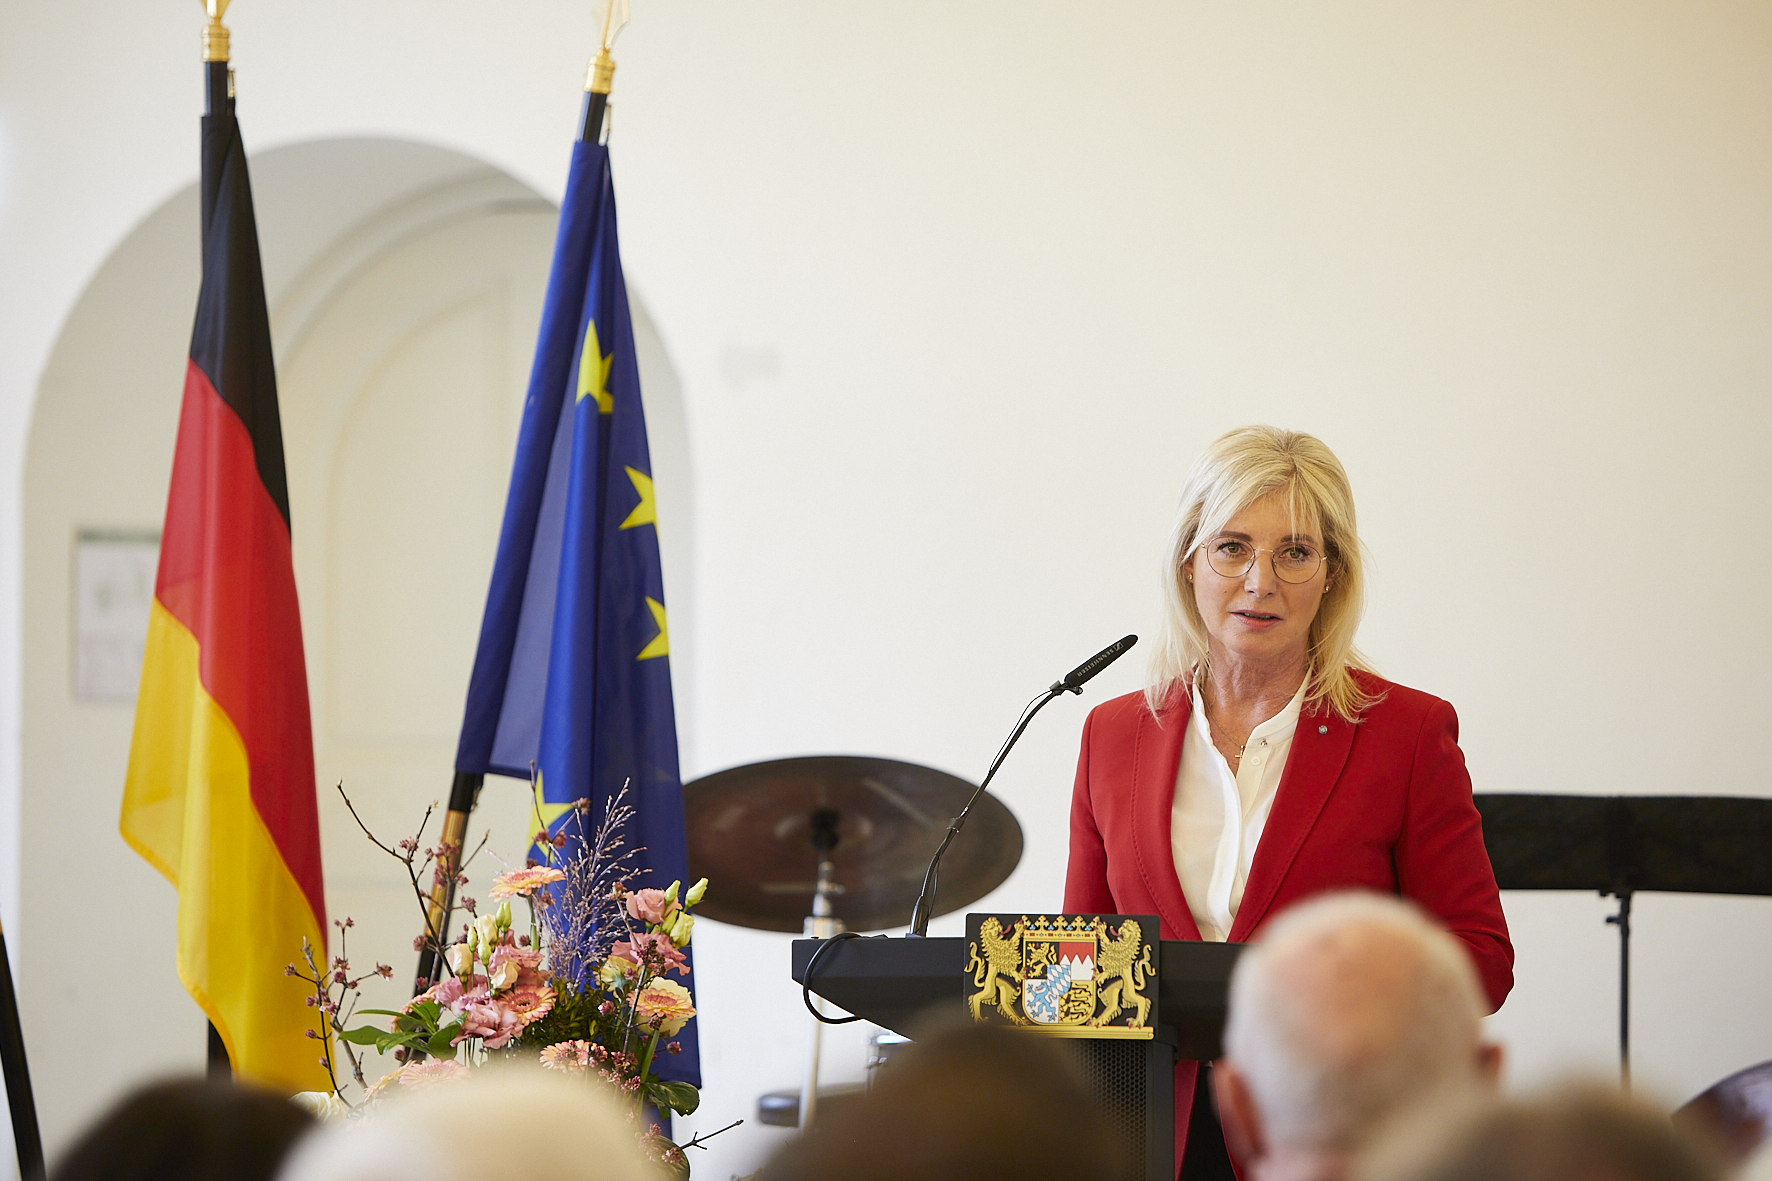 Staatsministerin Ulrike Scharf hält ein Grußwort bei der Verleihung des Bundesverdiesntkreuzes am Bande.